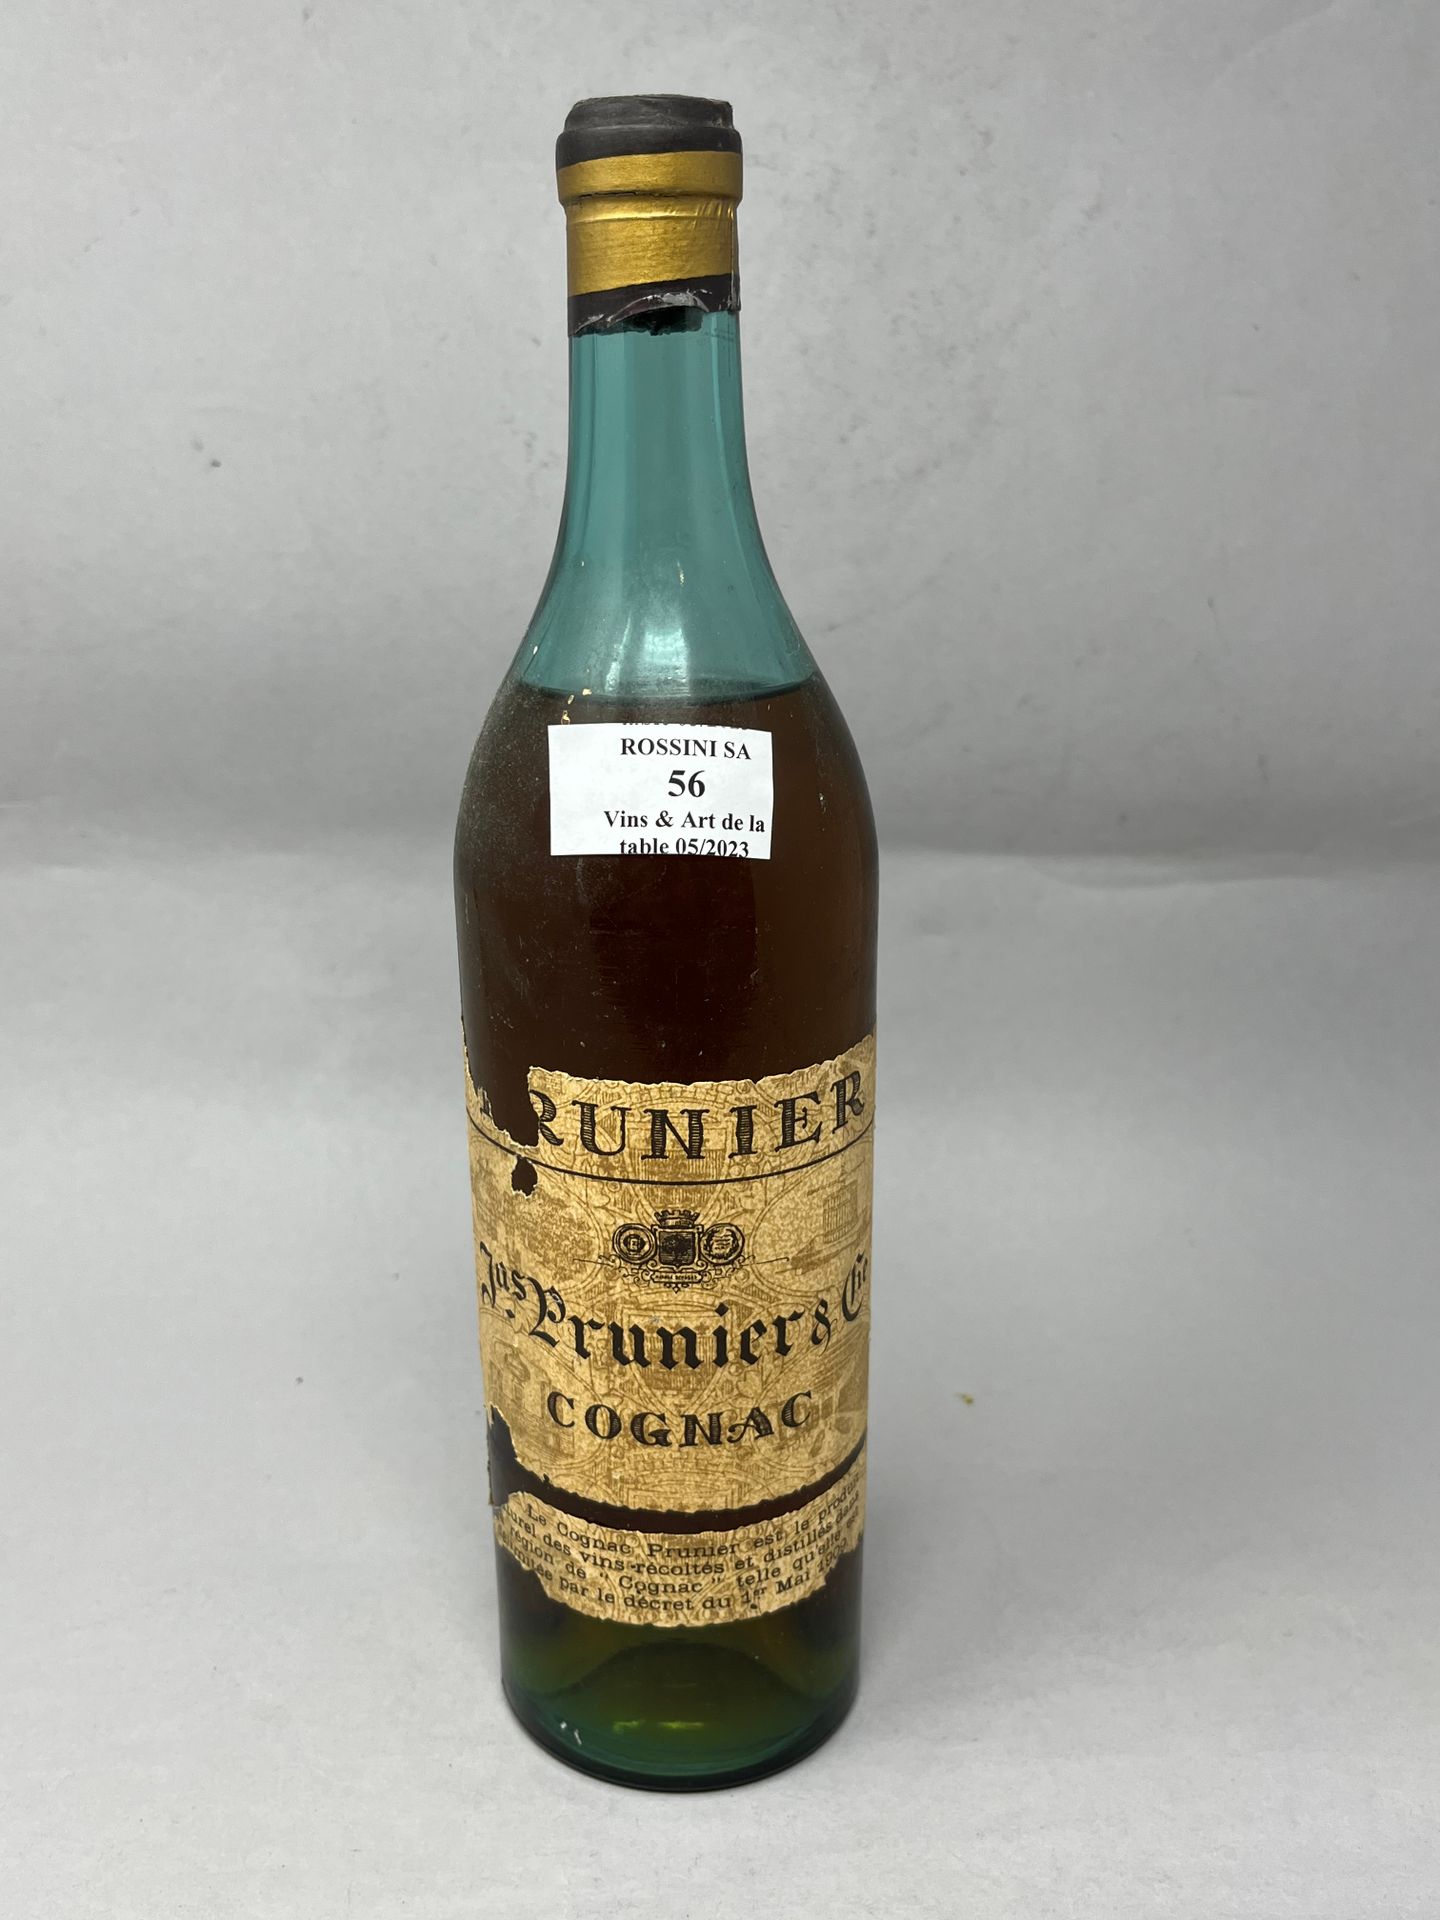 Null 1 Flasche Prunier Cognac.
Ebene über der Schulter